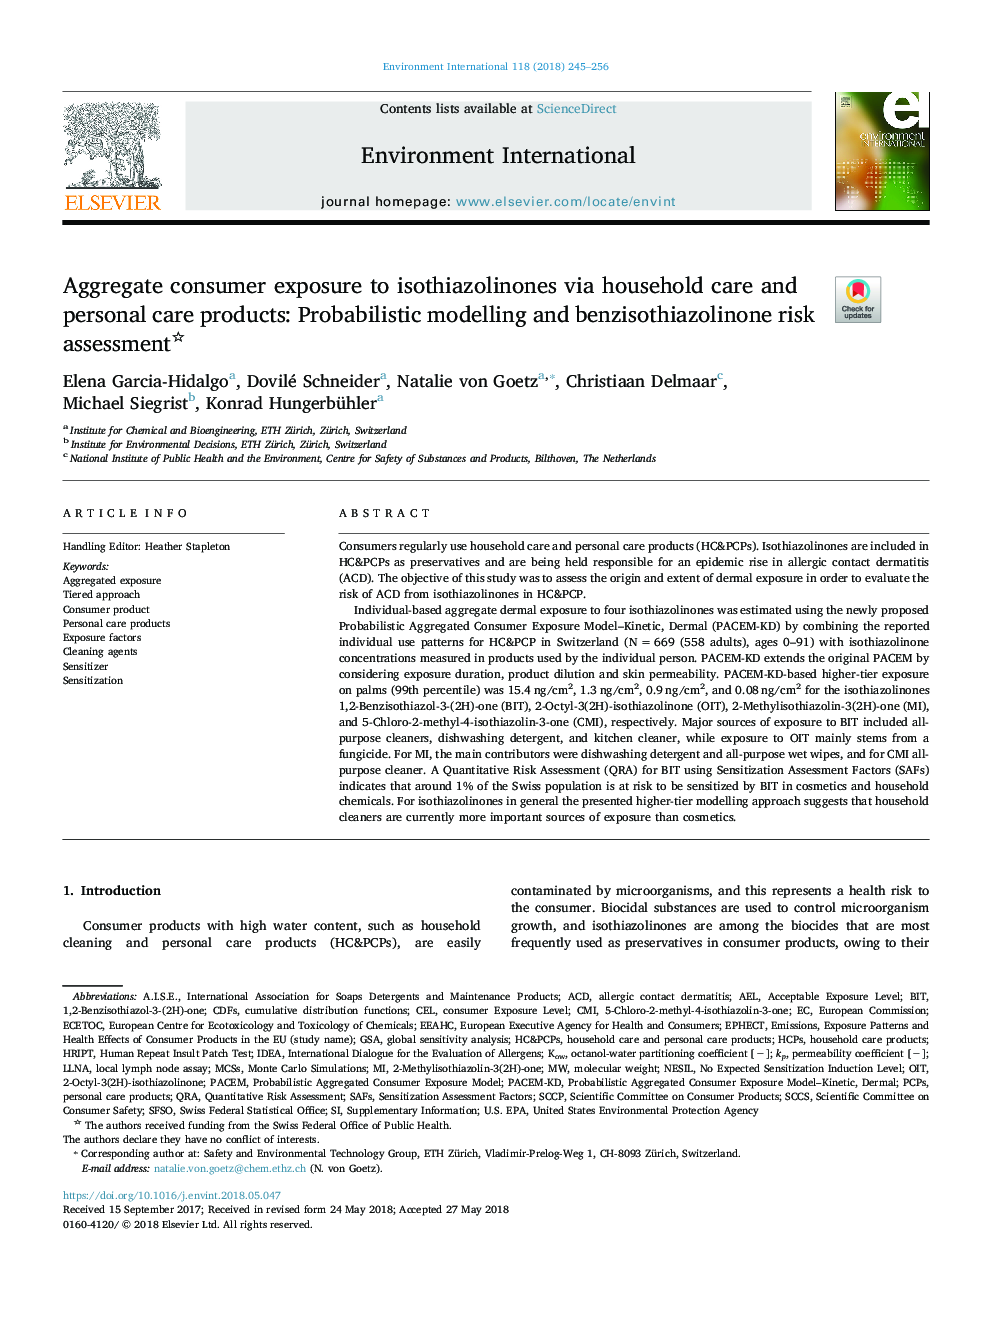 قرار گرفتن مصرف کنندگان در معرض ایزوتایازولینون ها از طریق مراقبت های خانگی و مراقبت شخصی: مدل سازی احتمالاتی و ارزیابی خطر بنزیزوتیازولینون 